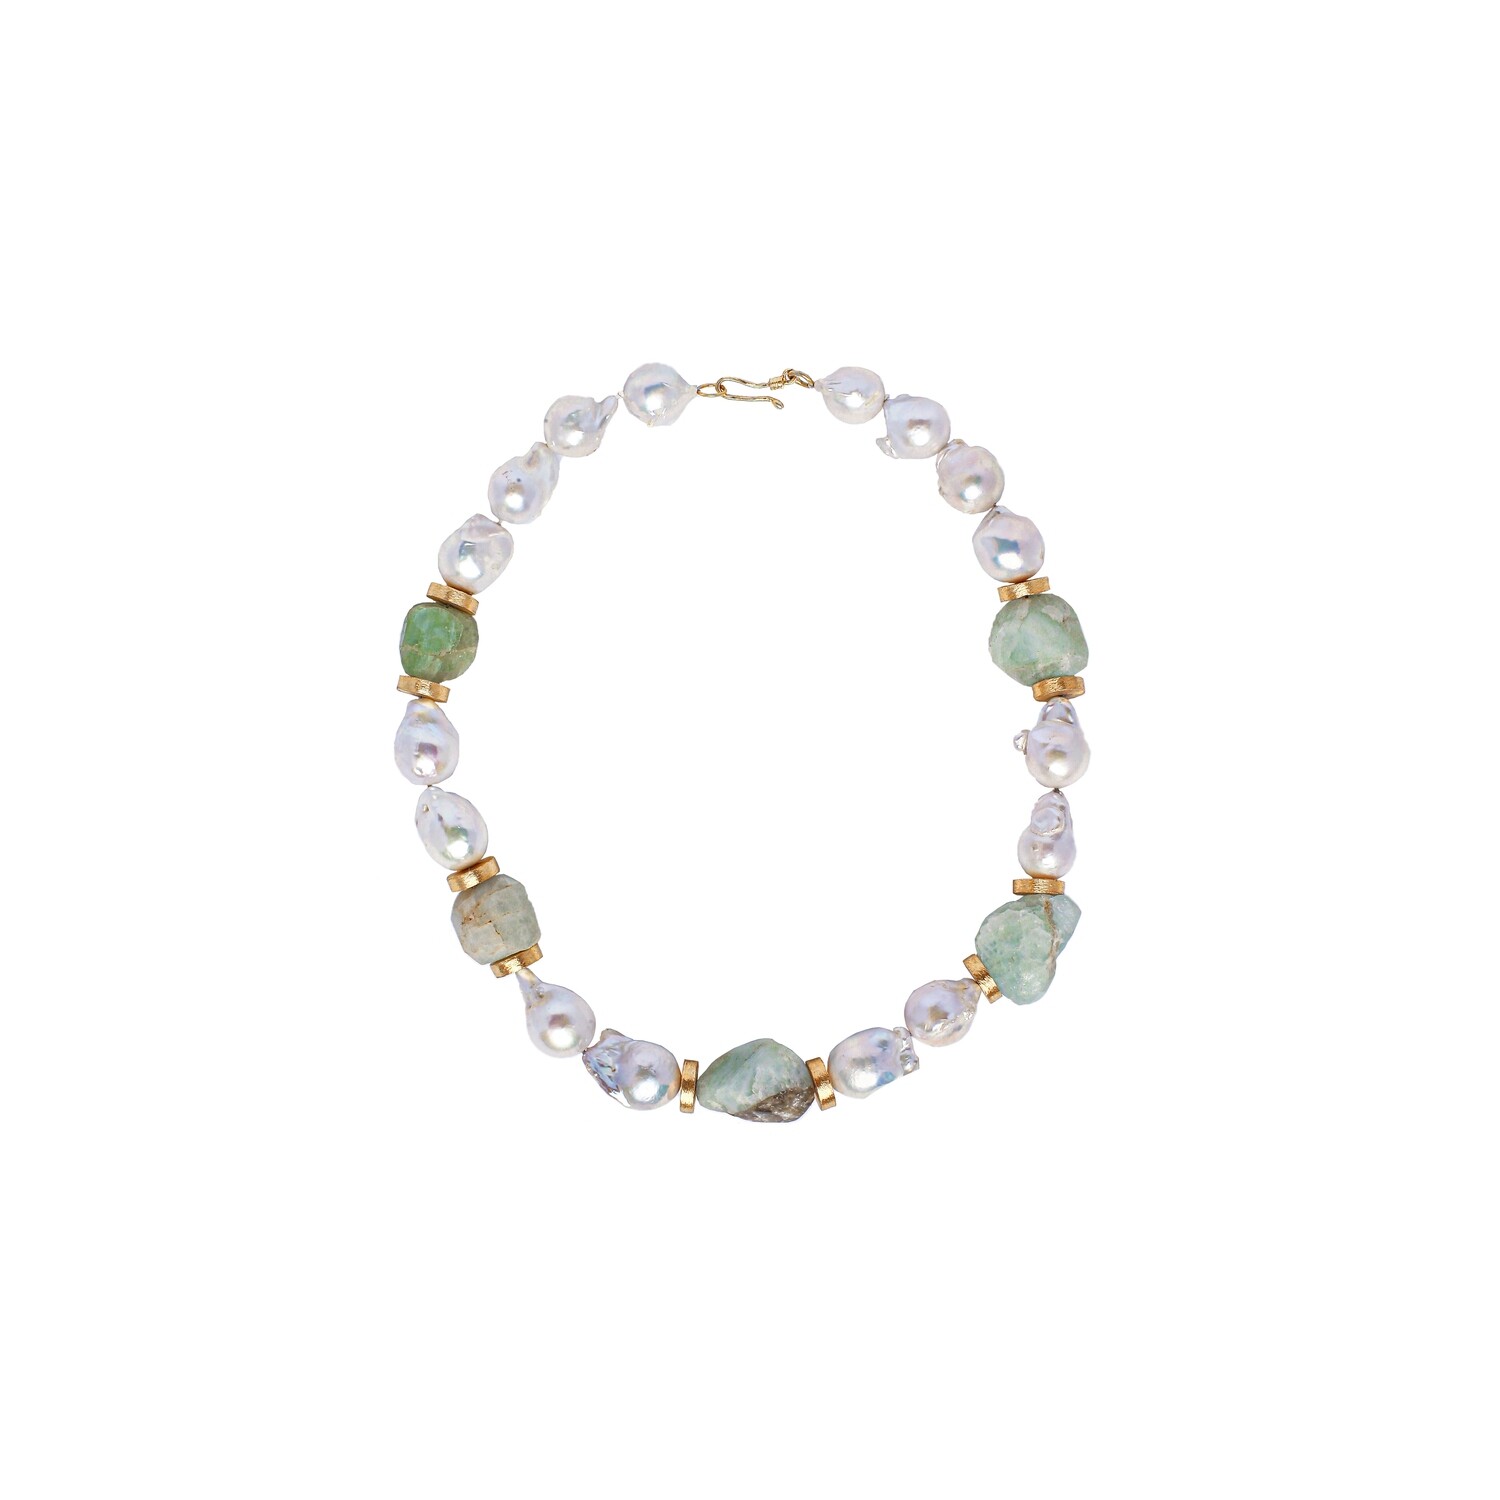 ICON in Baroque Pearls and Aquamarine gemstones